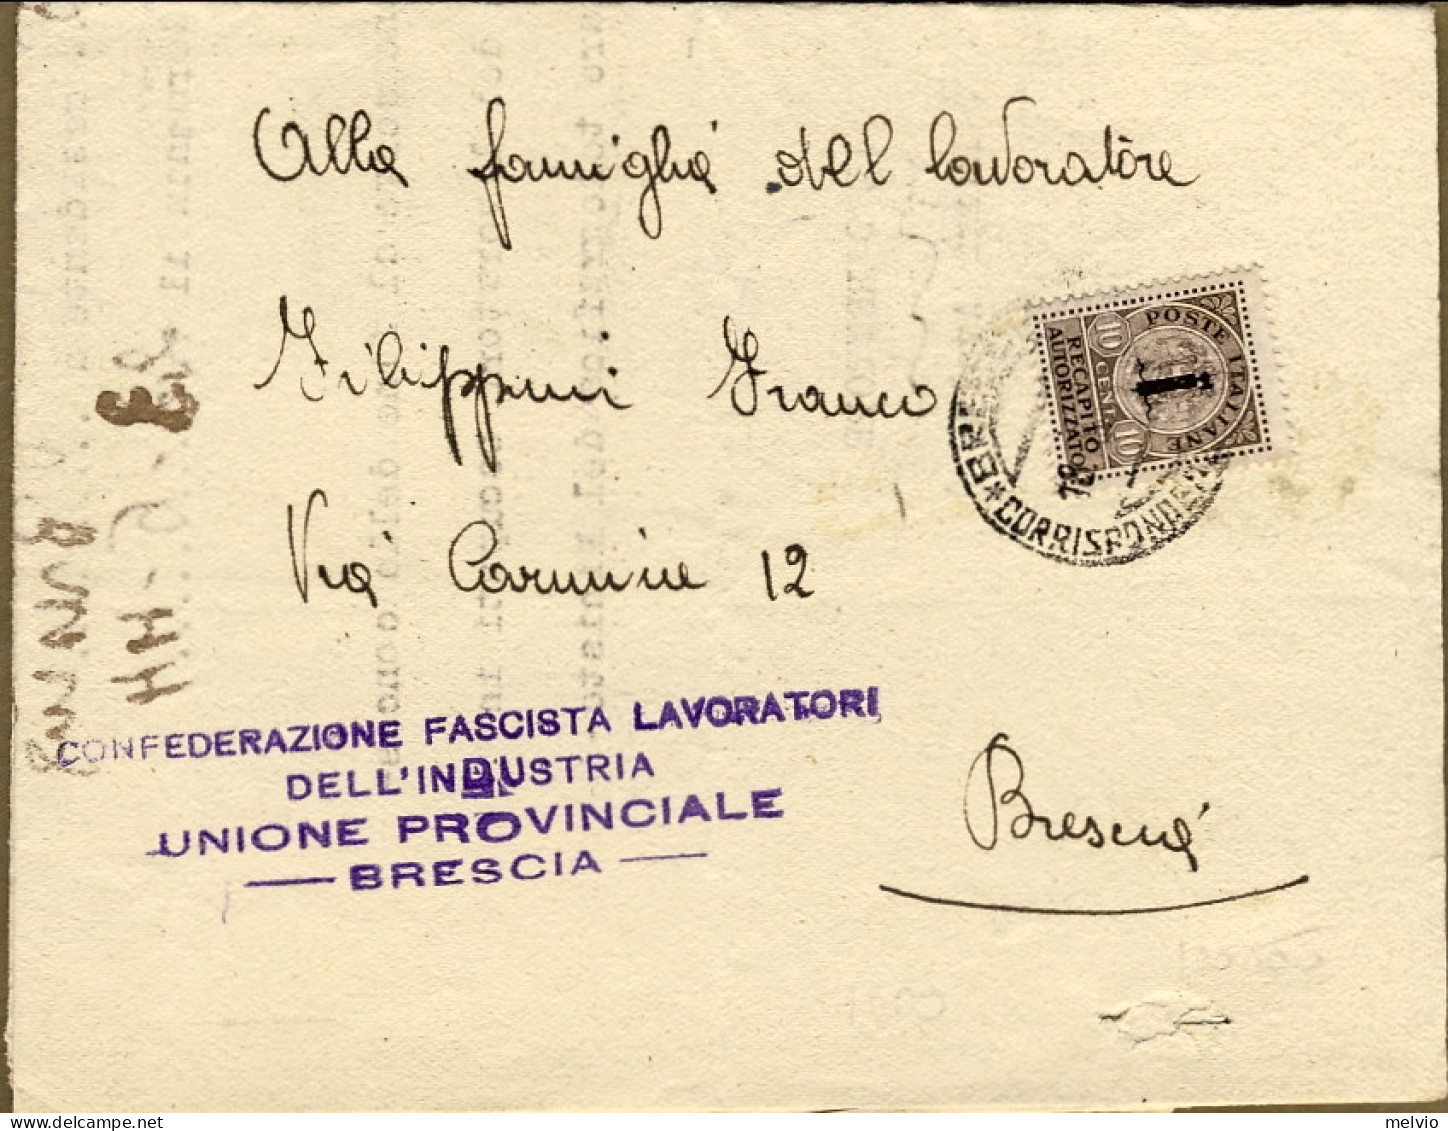 1944-cat.Sassone Euro 150, Piego Con Affr.d'emergenza Recapito Autorizzato 10c.  - Poststempel